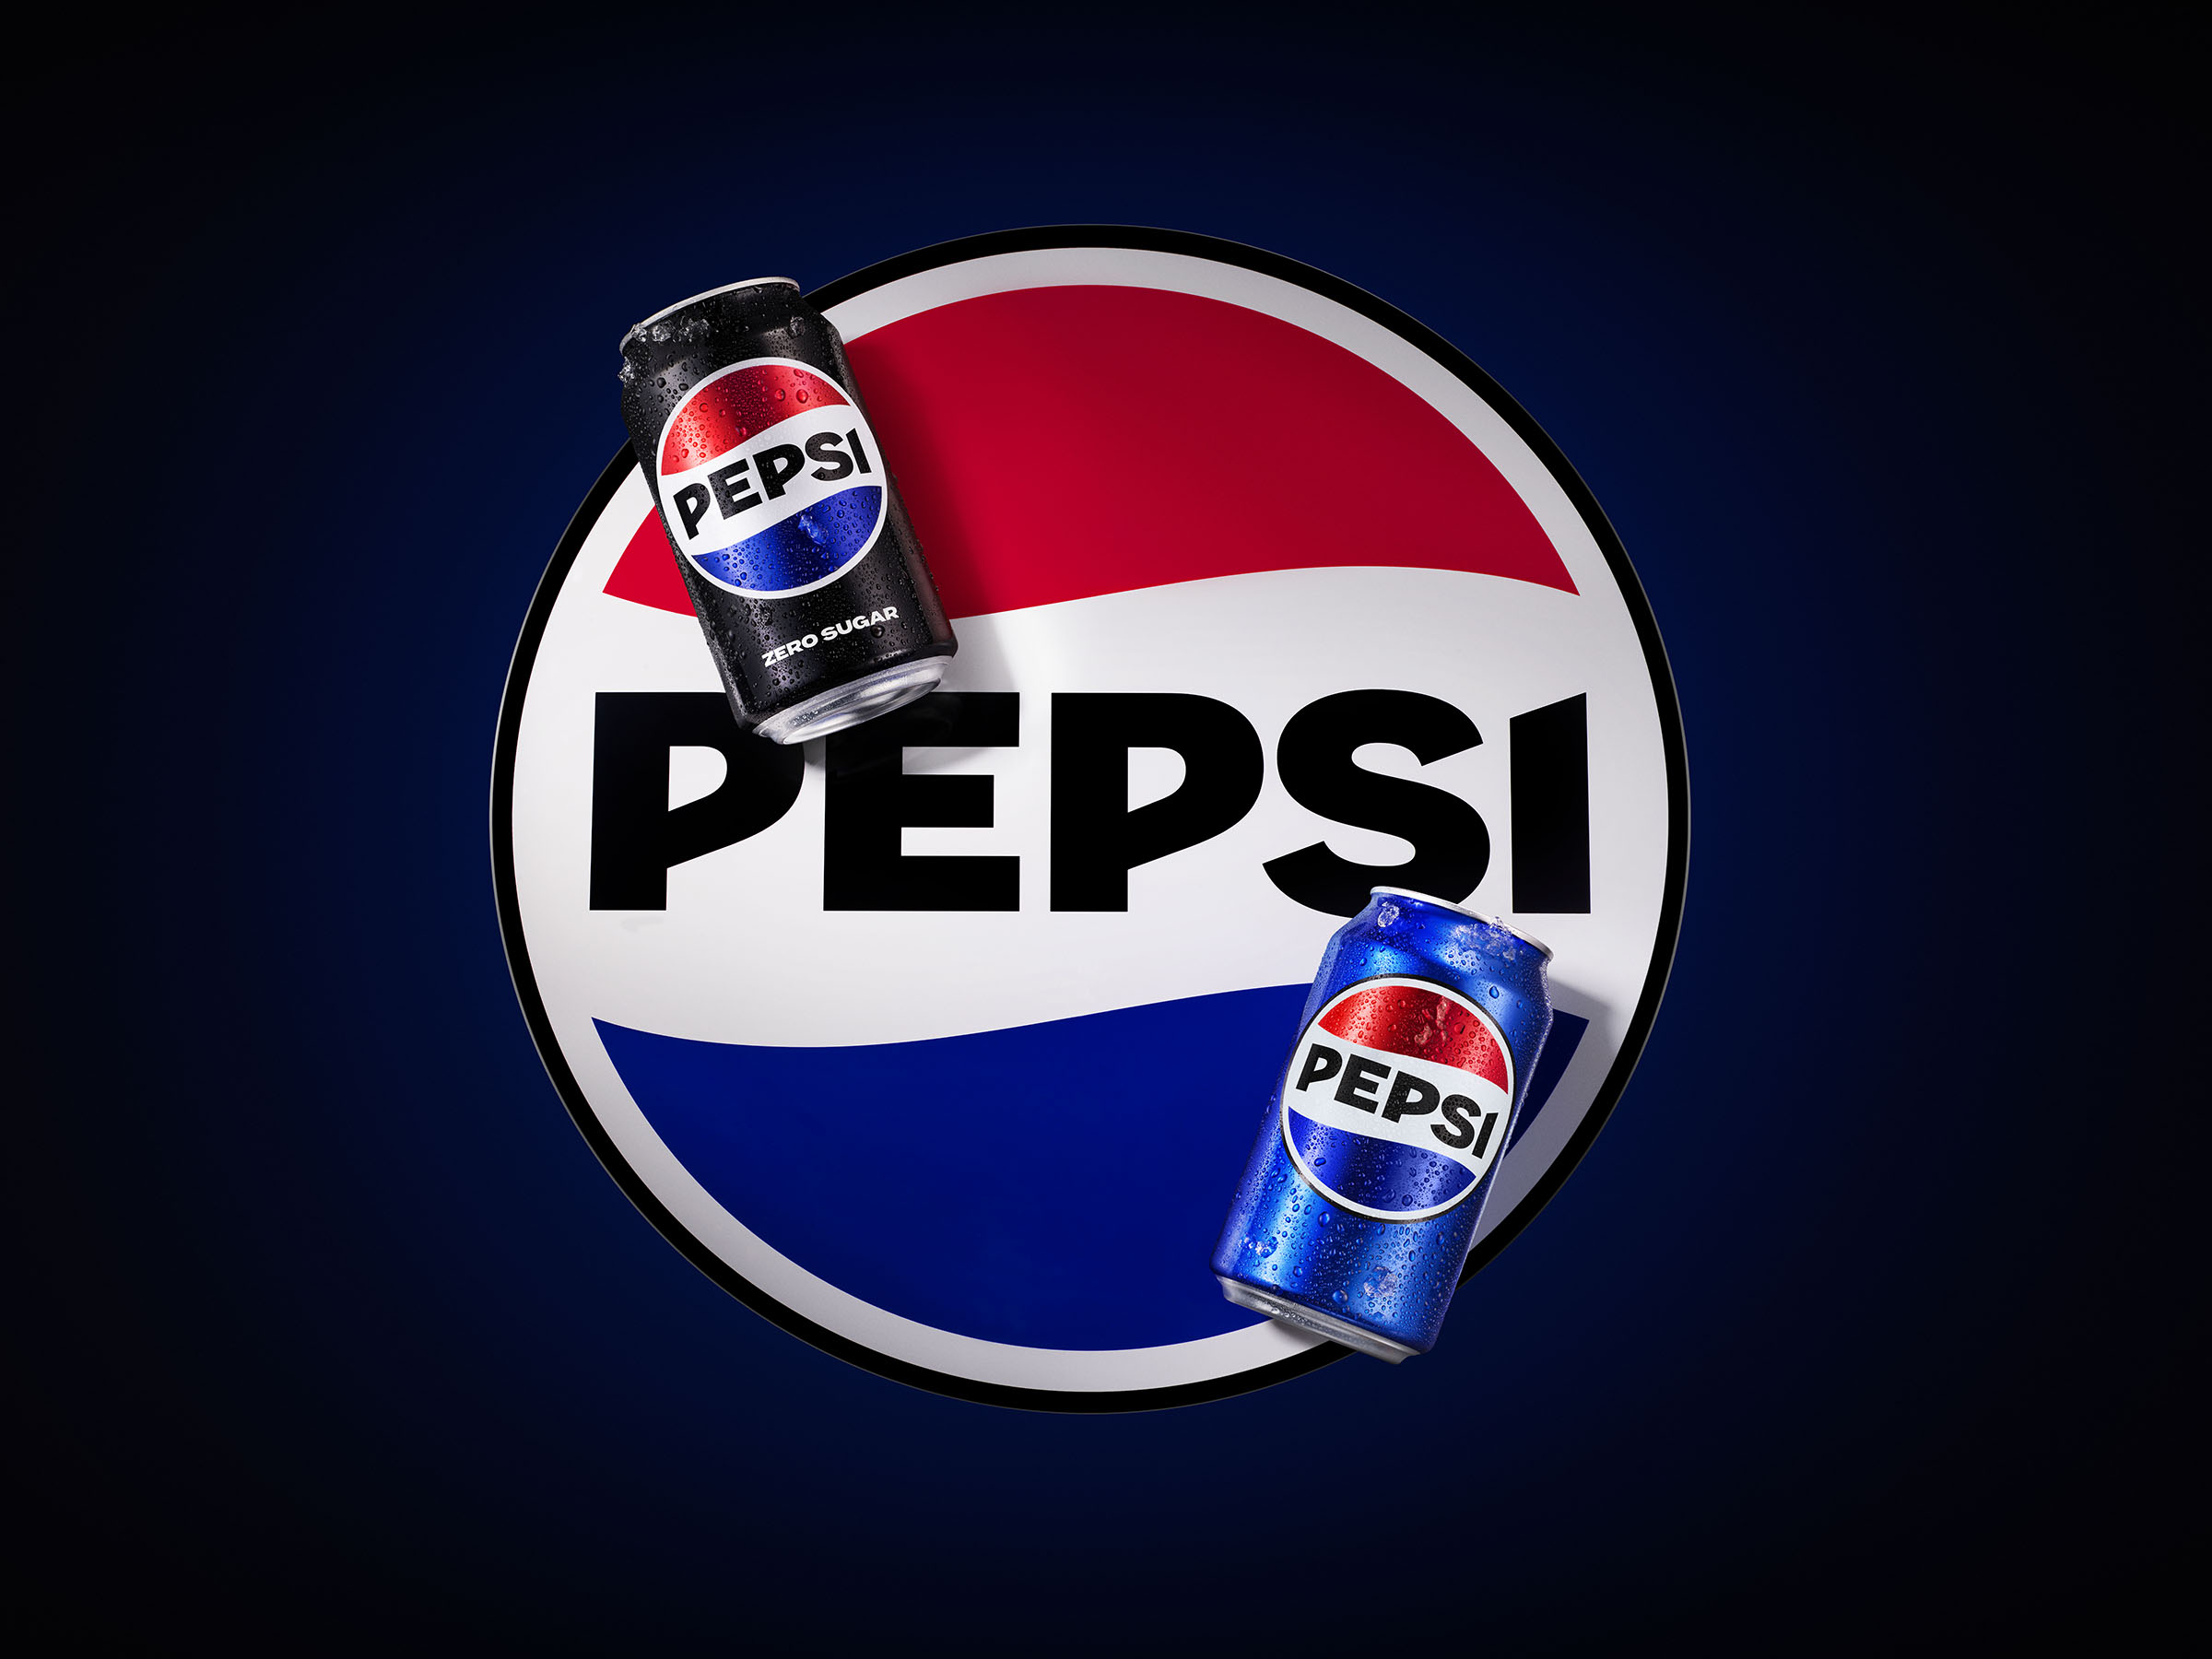 Pepsi26